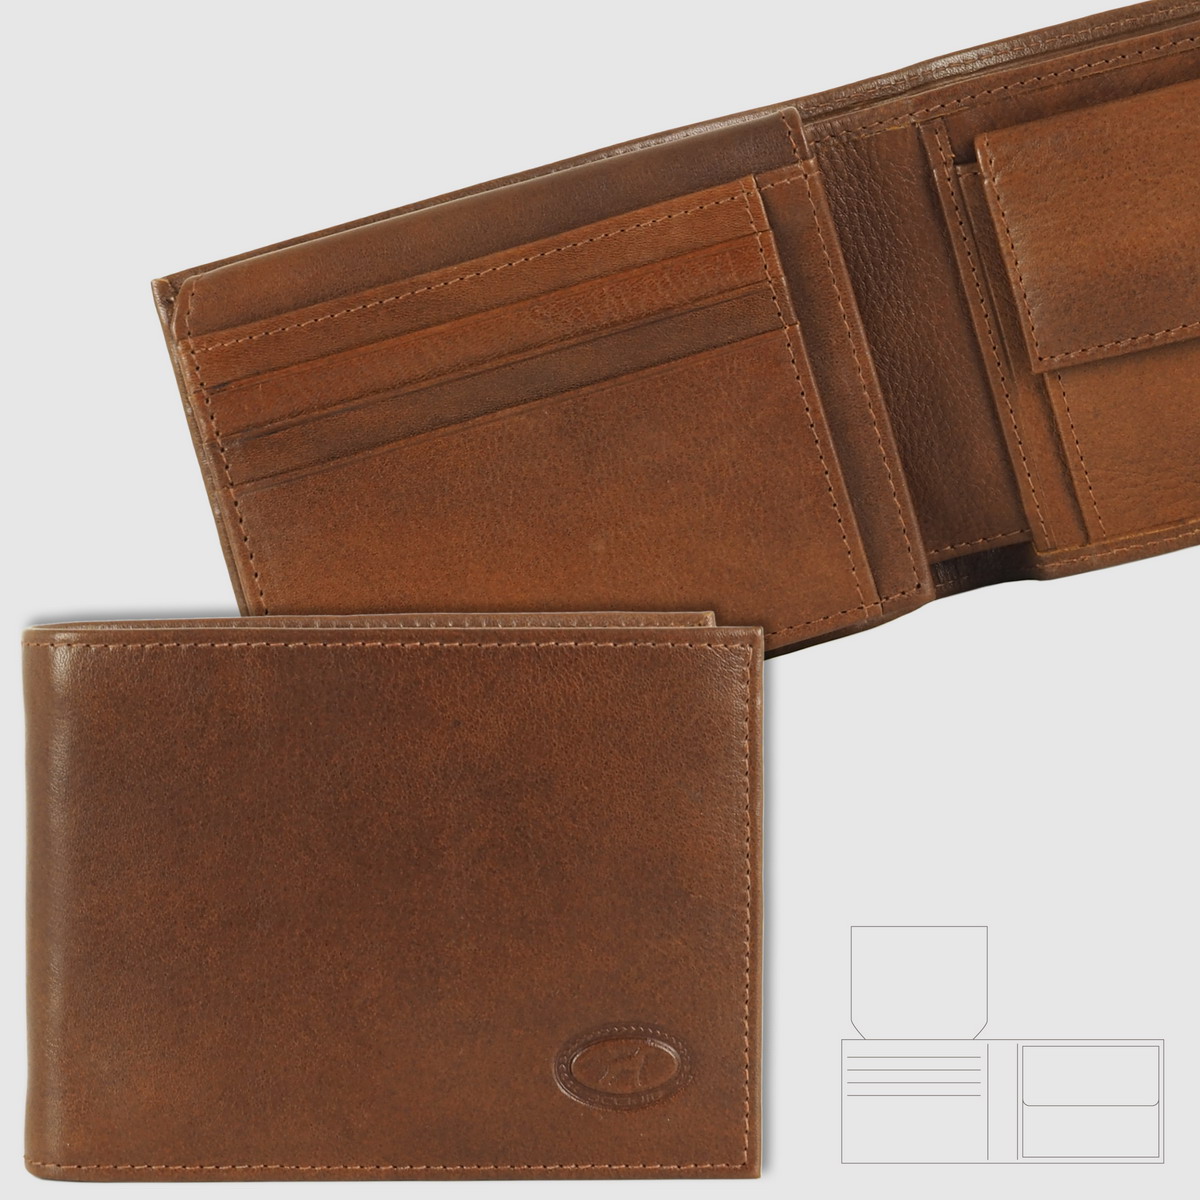 classic men's wallet